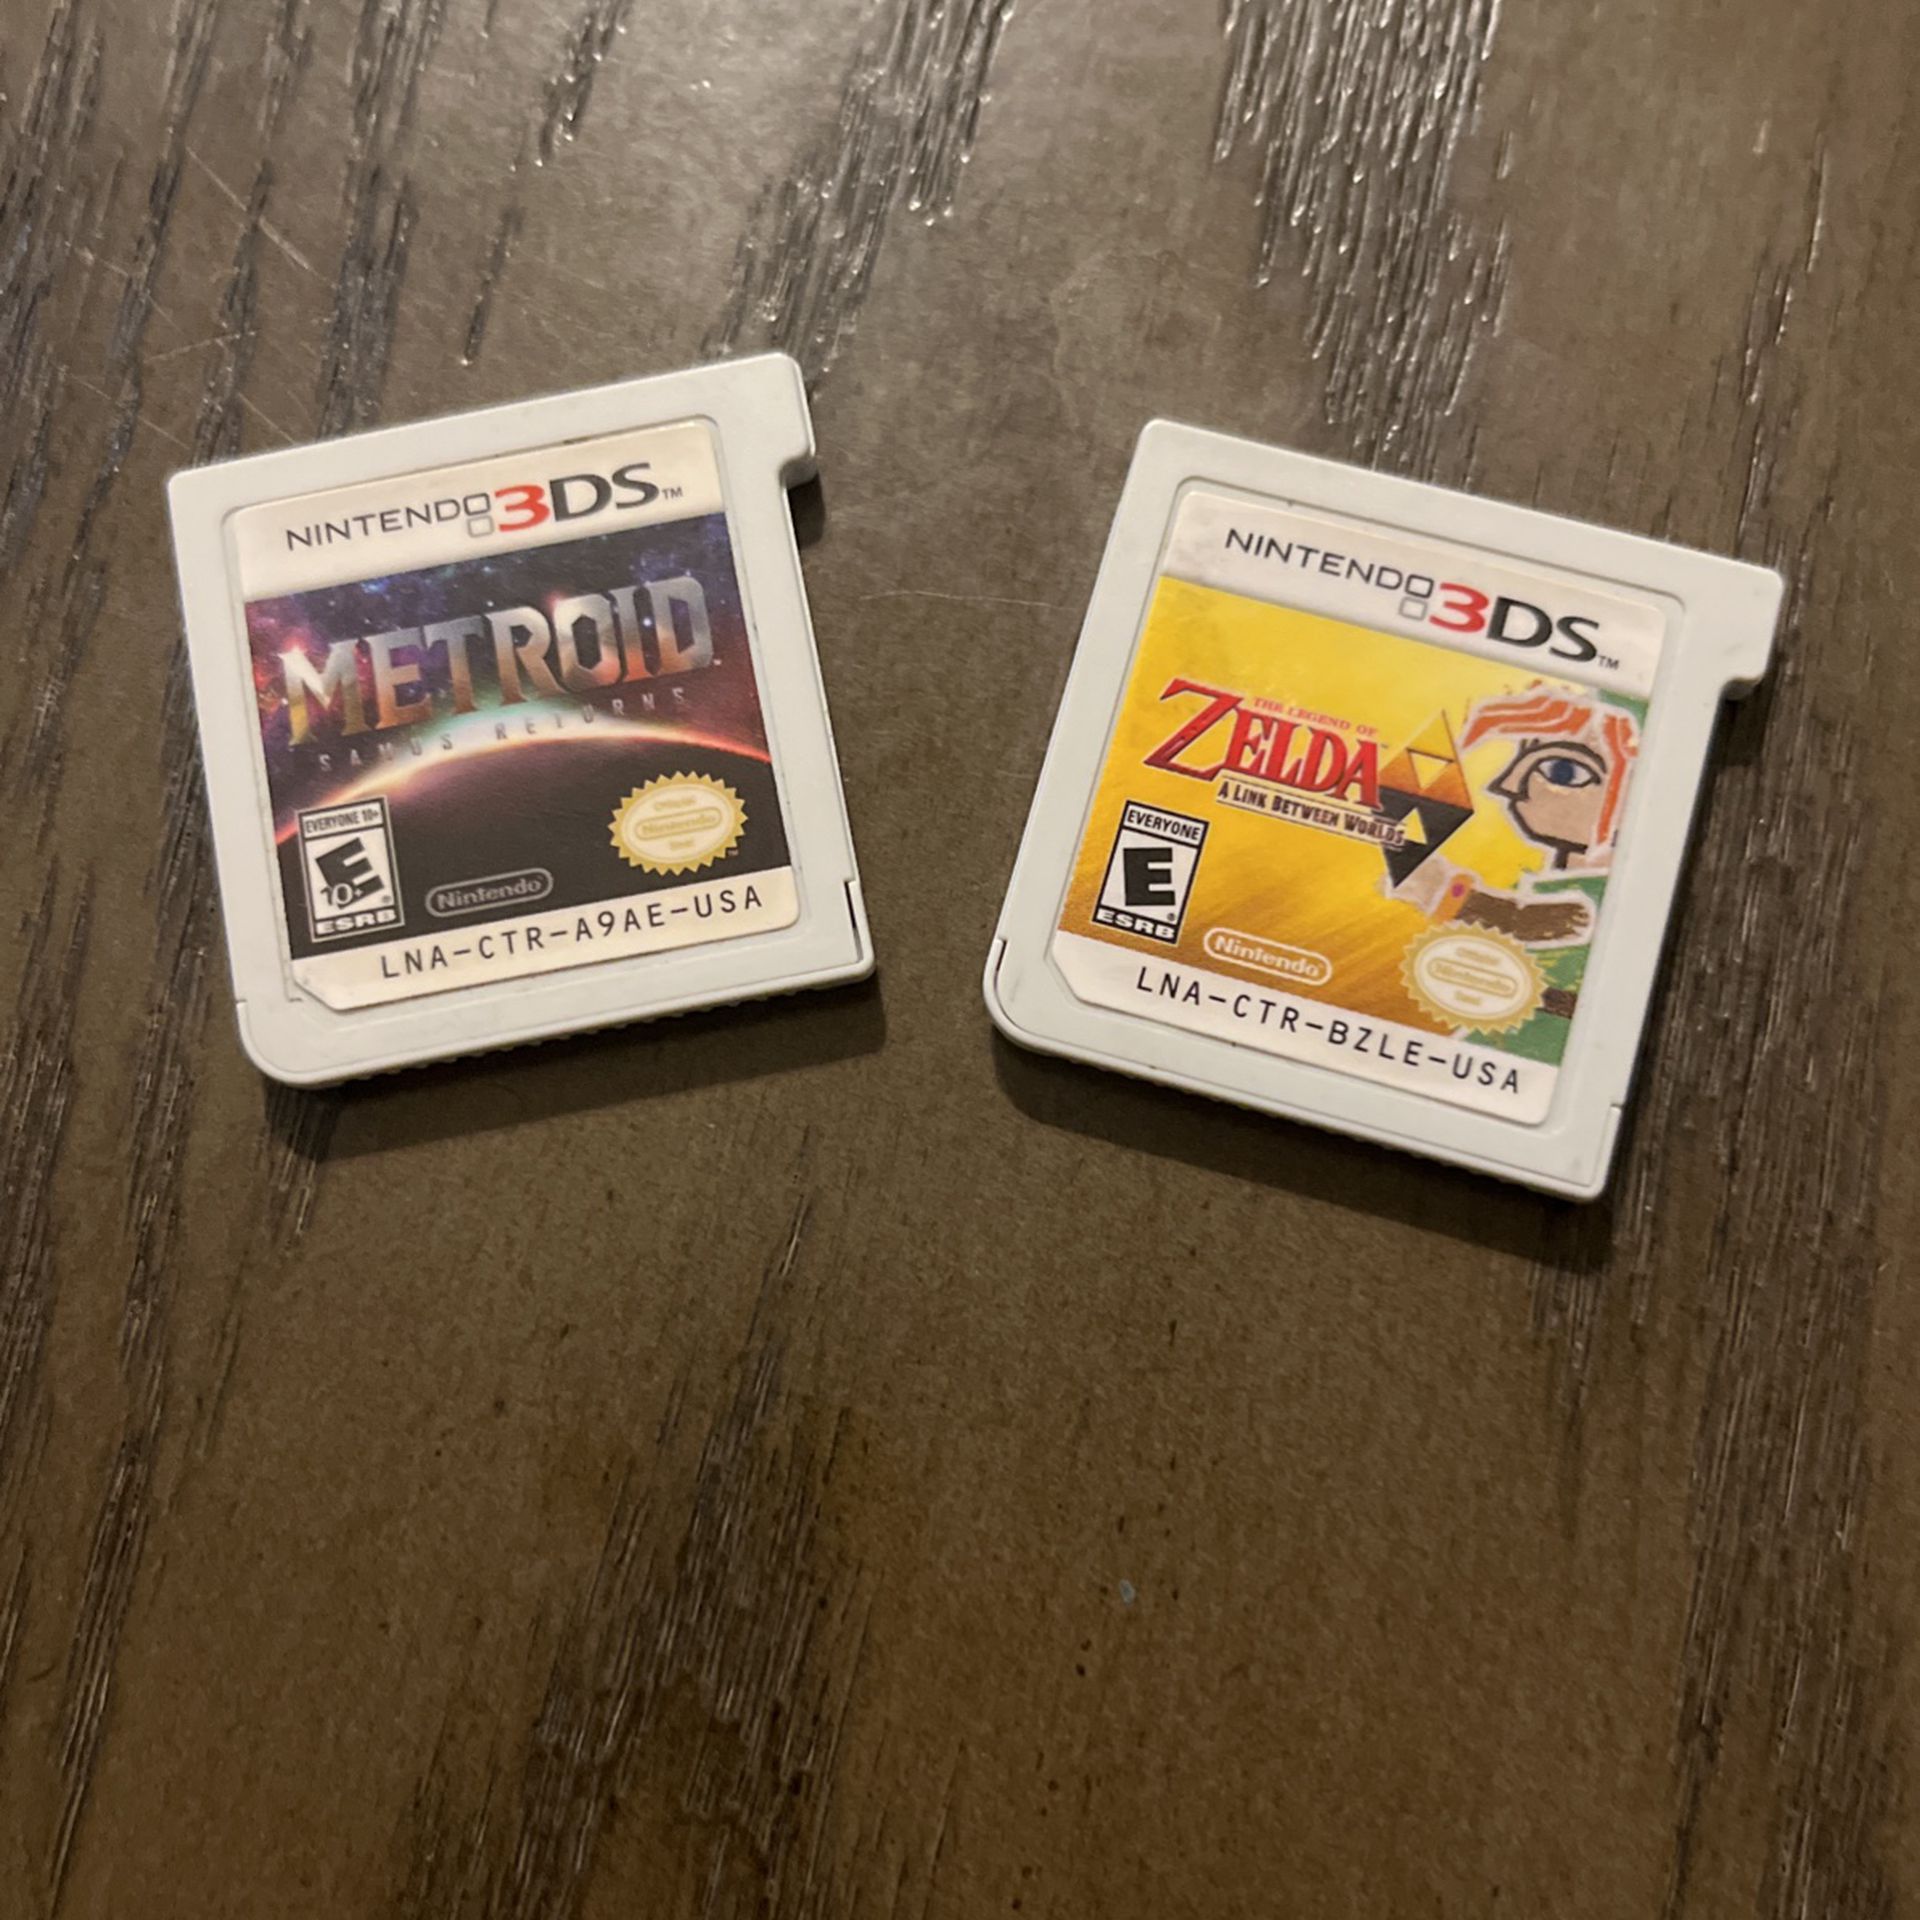 Nintendo 3Ds Zelda A Link Between Worlds Metroid Samsun Returns